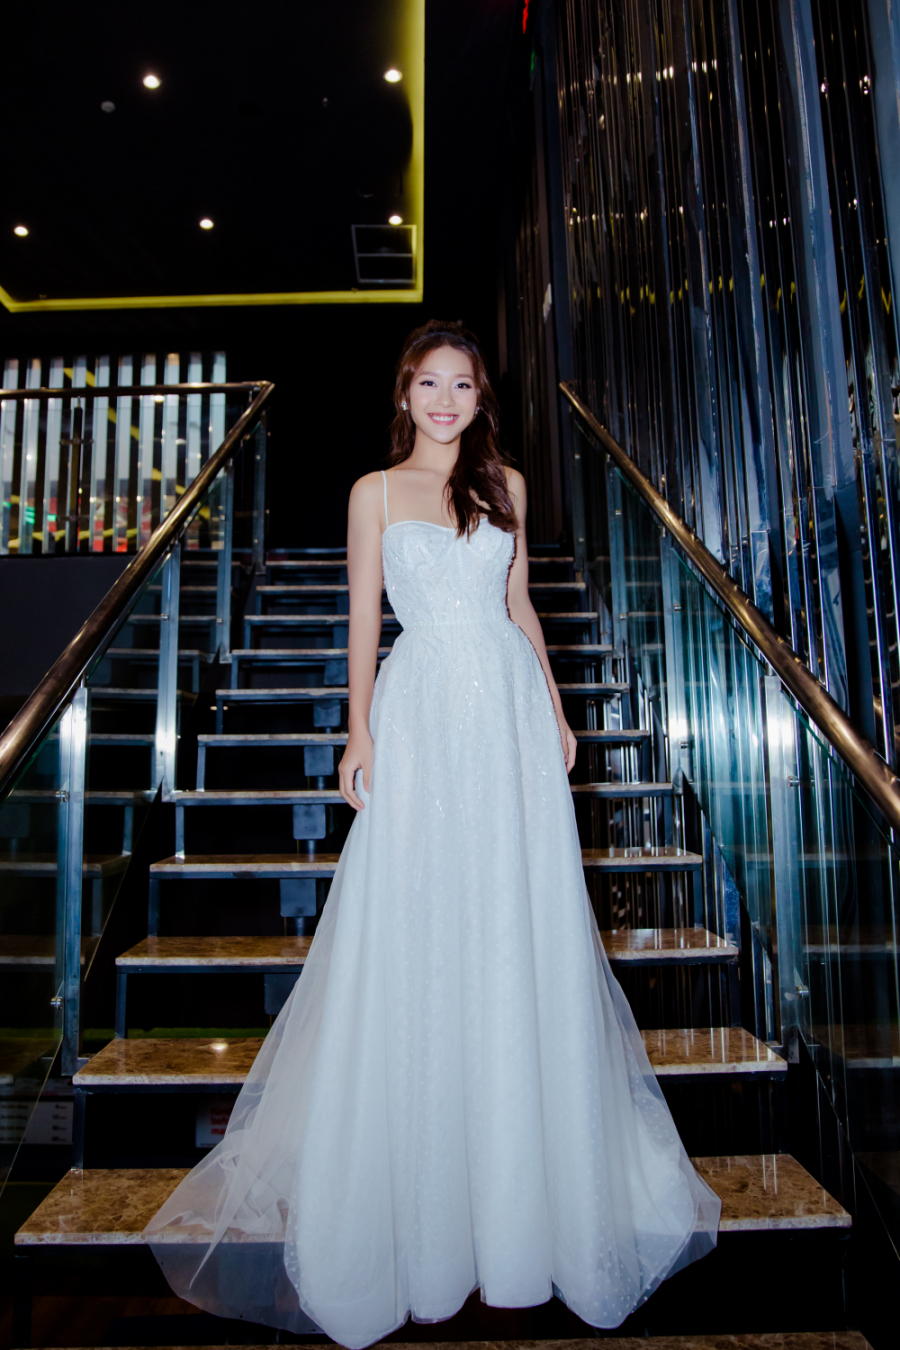 Cũng chọn váy trắng, Khả Ngân xinh như công chúa khi hóa thân thành cô dâu trong buổi công chiếu 2 tập cuối của phim 